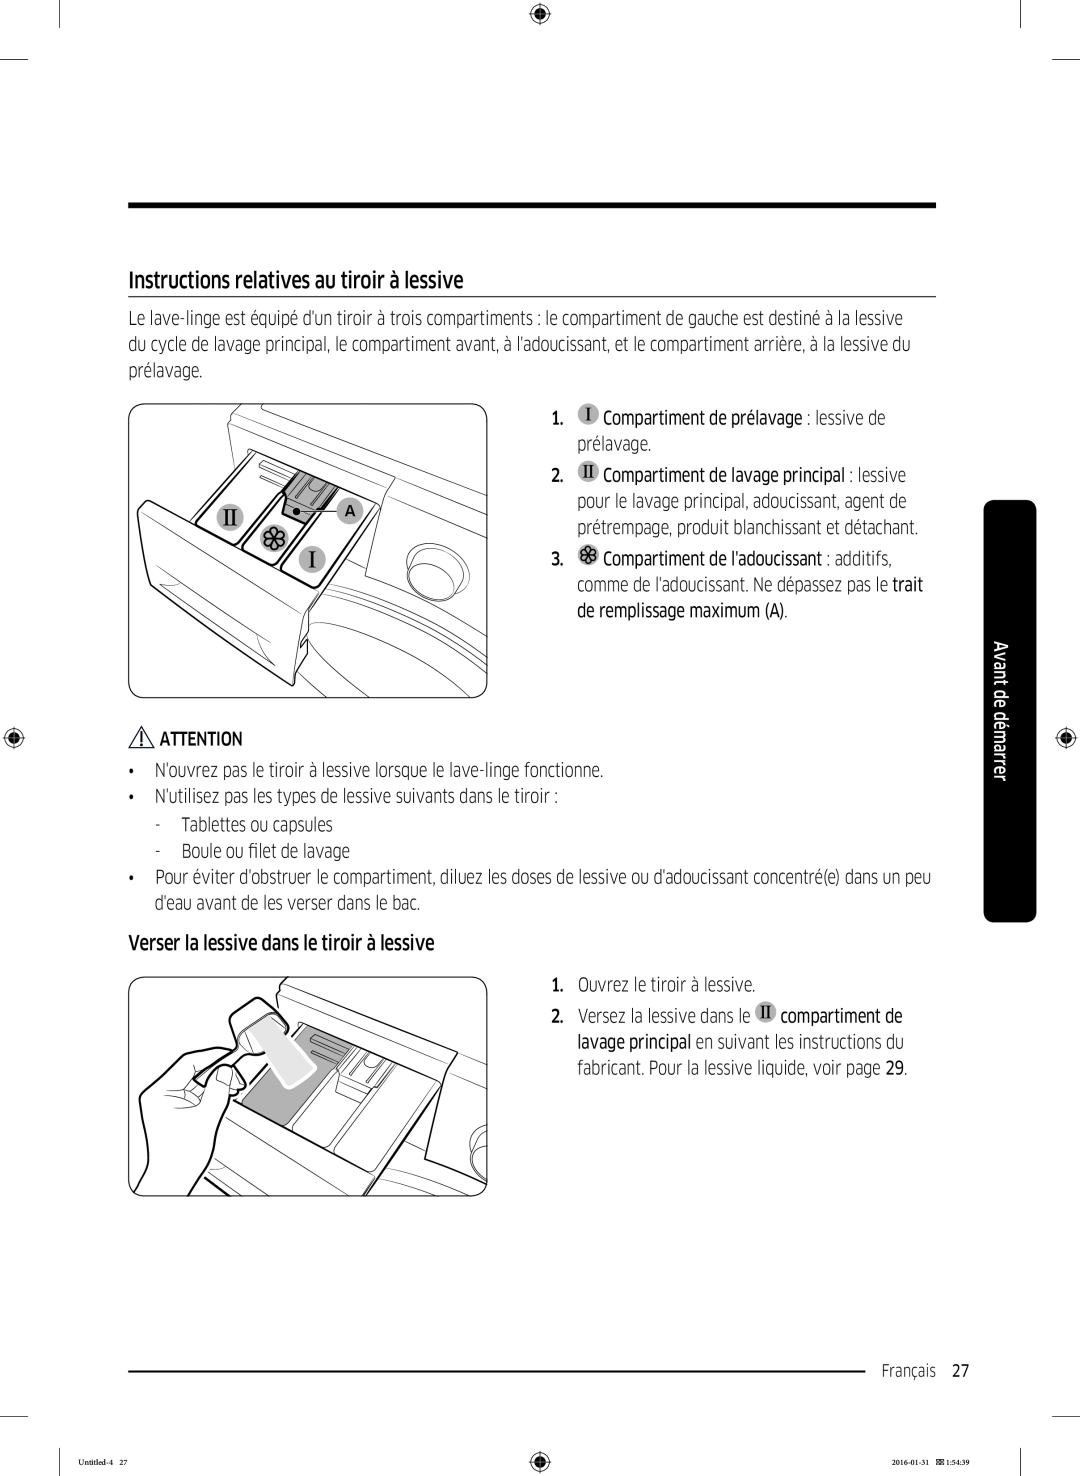 Samsung WW90K5400UW/EG manual Instructions relatives au tiroir à lessive, Verser la lessive dans le tiroir à lessive 